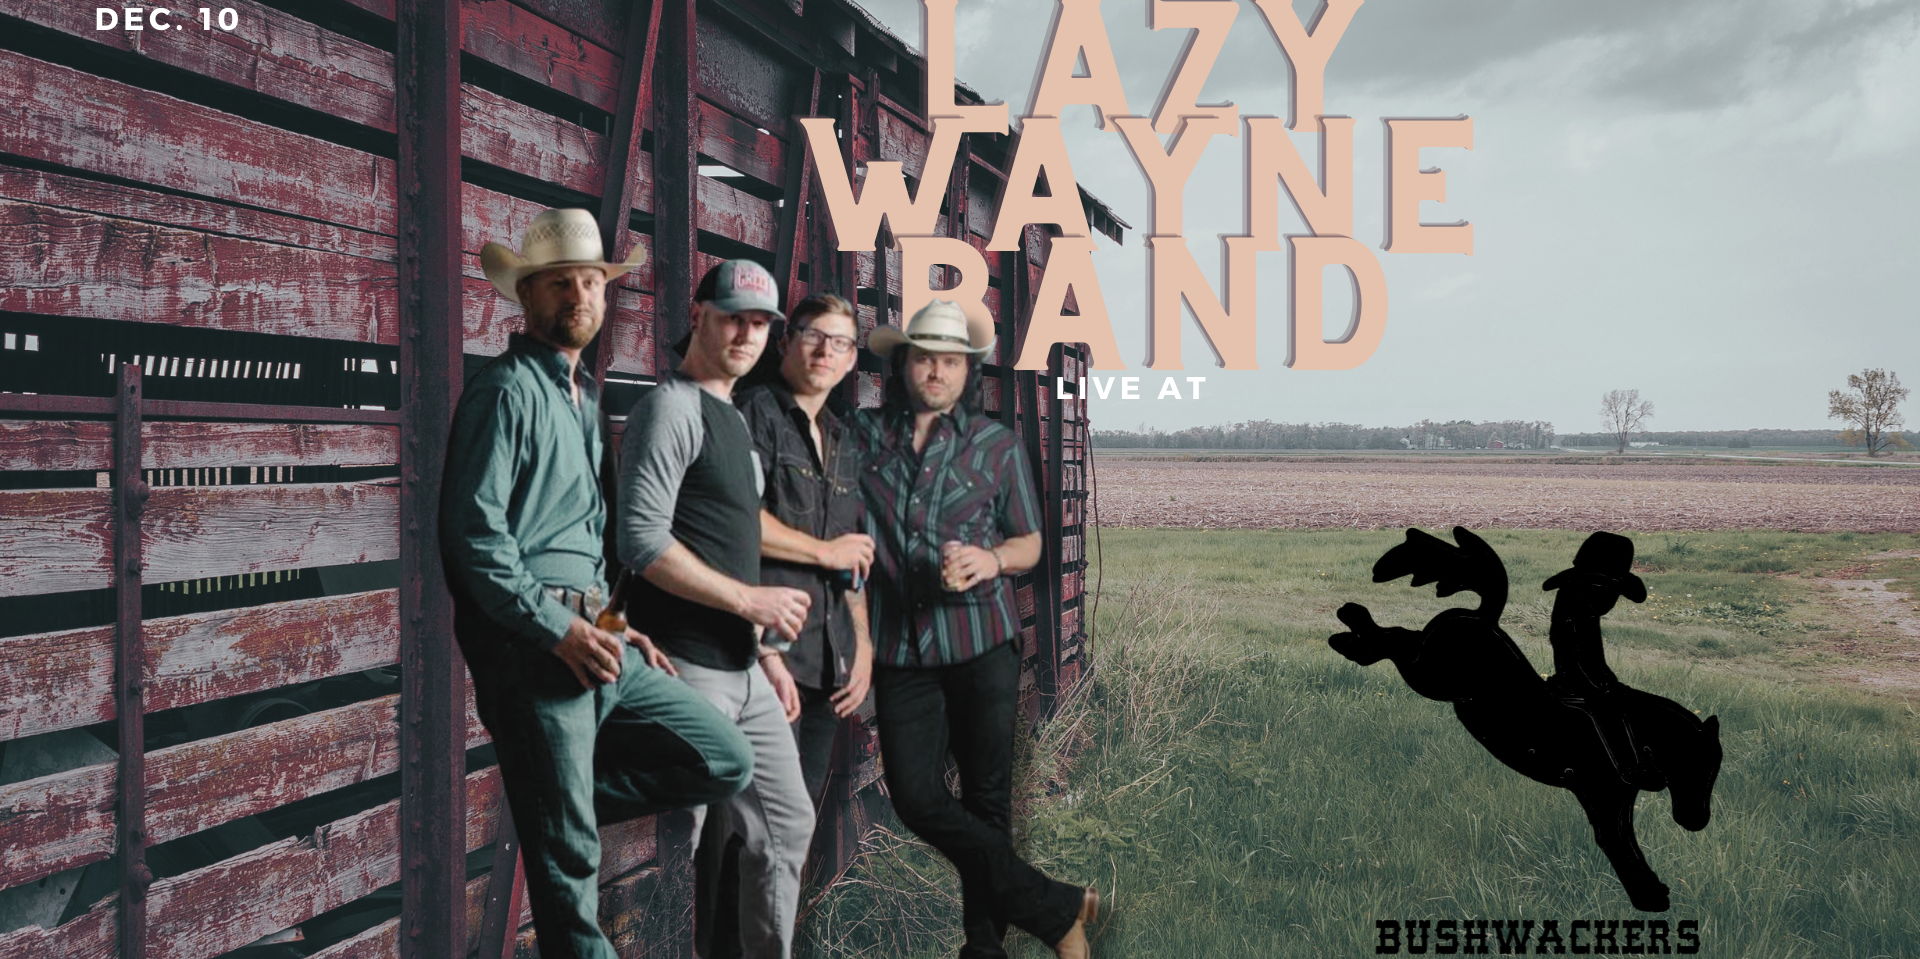 Bushwackers Live: Lazy Wayne Band promotional image